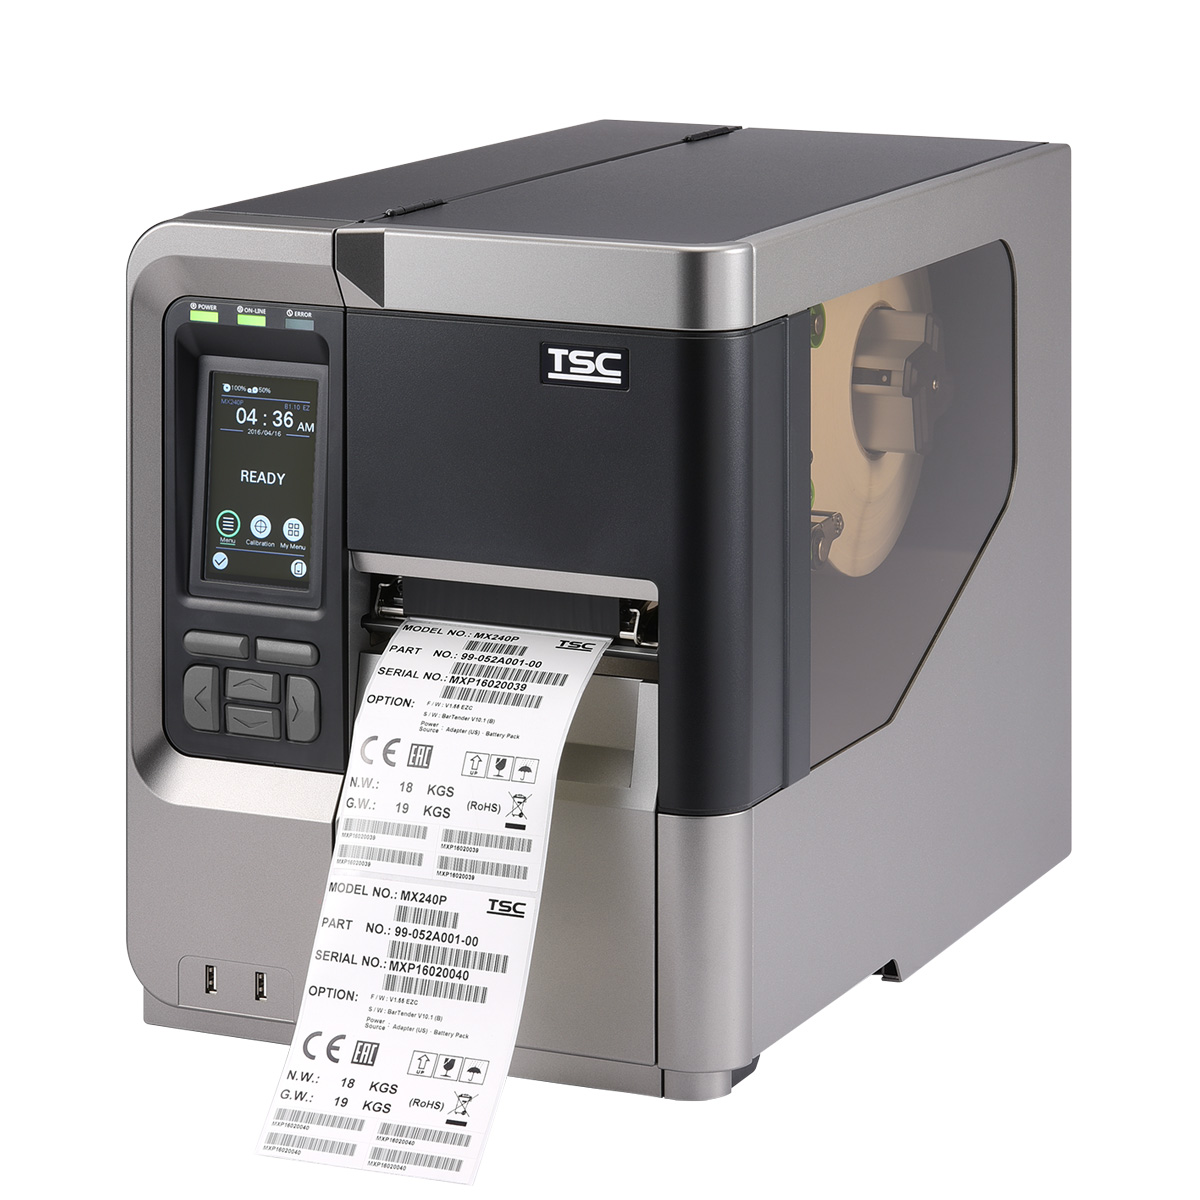 Réaliser vos inventaires grâce à notre imprimante et nos étiquettes